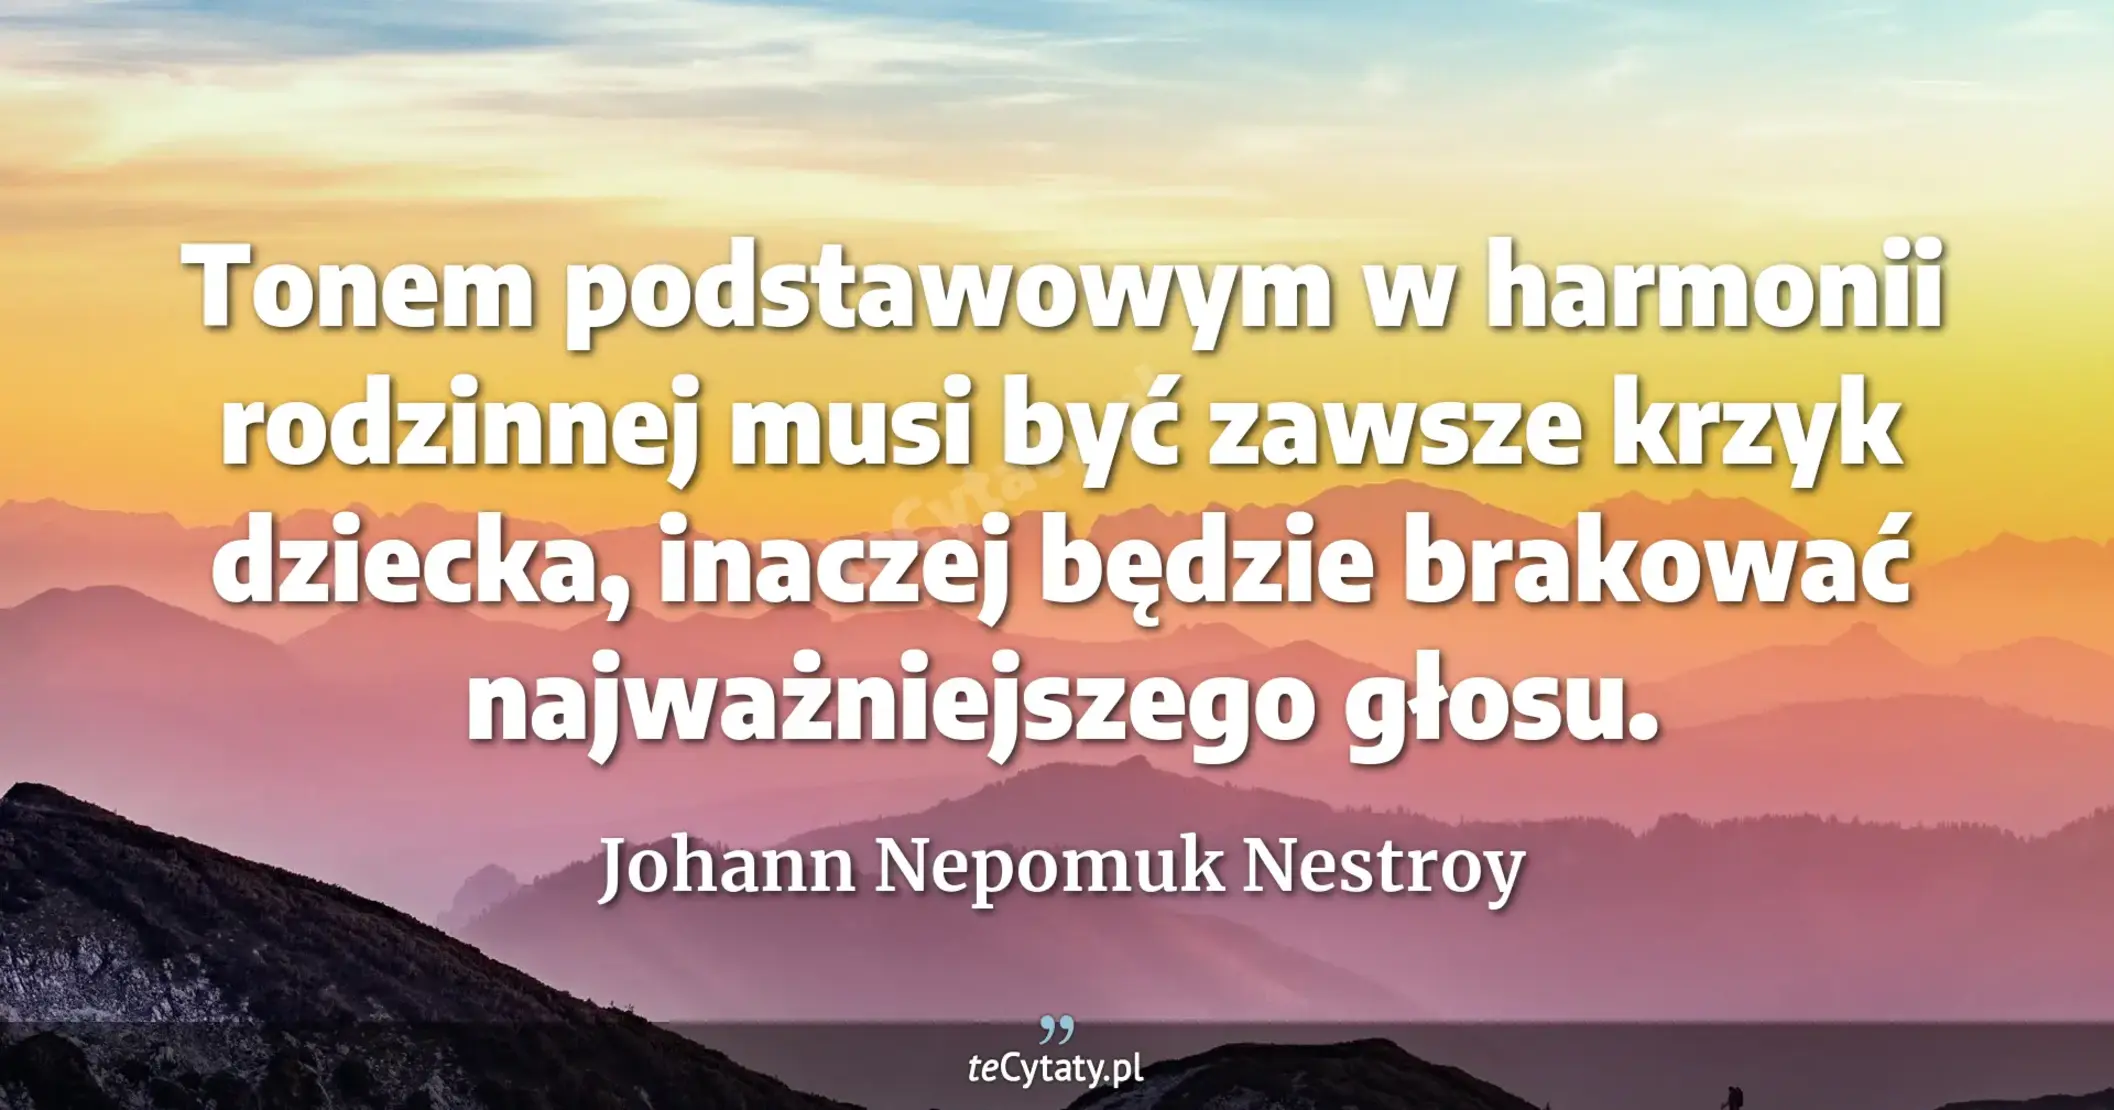 Tonem podstawowym w harmonii rodzinnej musi być zawsze krzyk dziecka, inaczej będzie brakować najważniejszego głosu. - Johann Nepomuk Nestroy